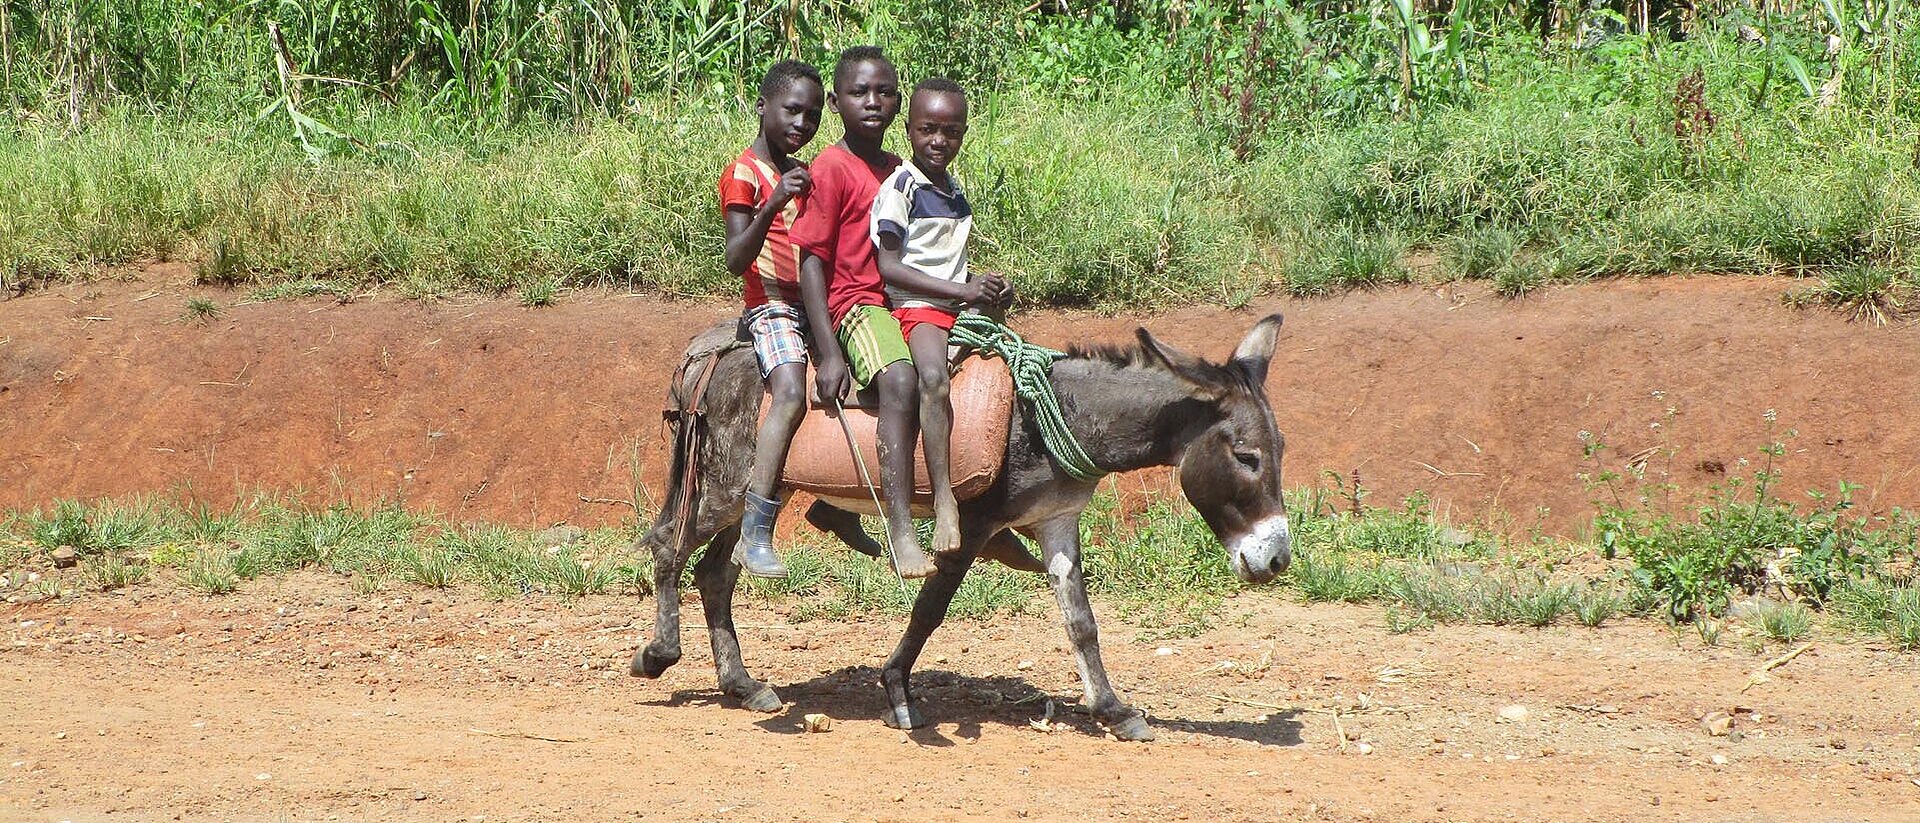 Drei äthiopische Kinder auf Esel